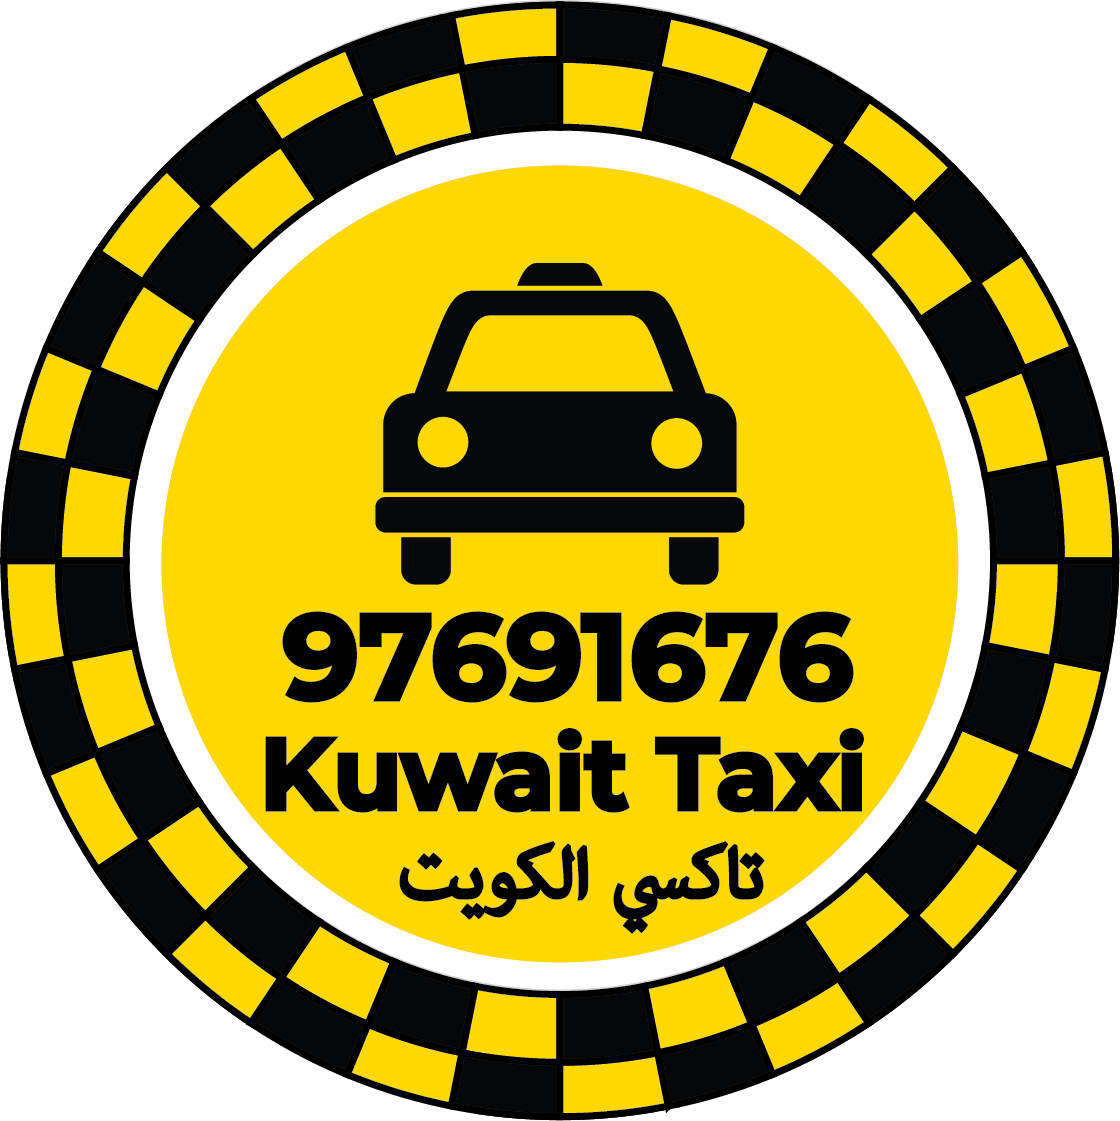 رقم تاكسي النويصيب - تاكسي النويصيب كويت